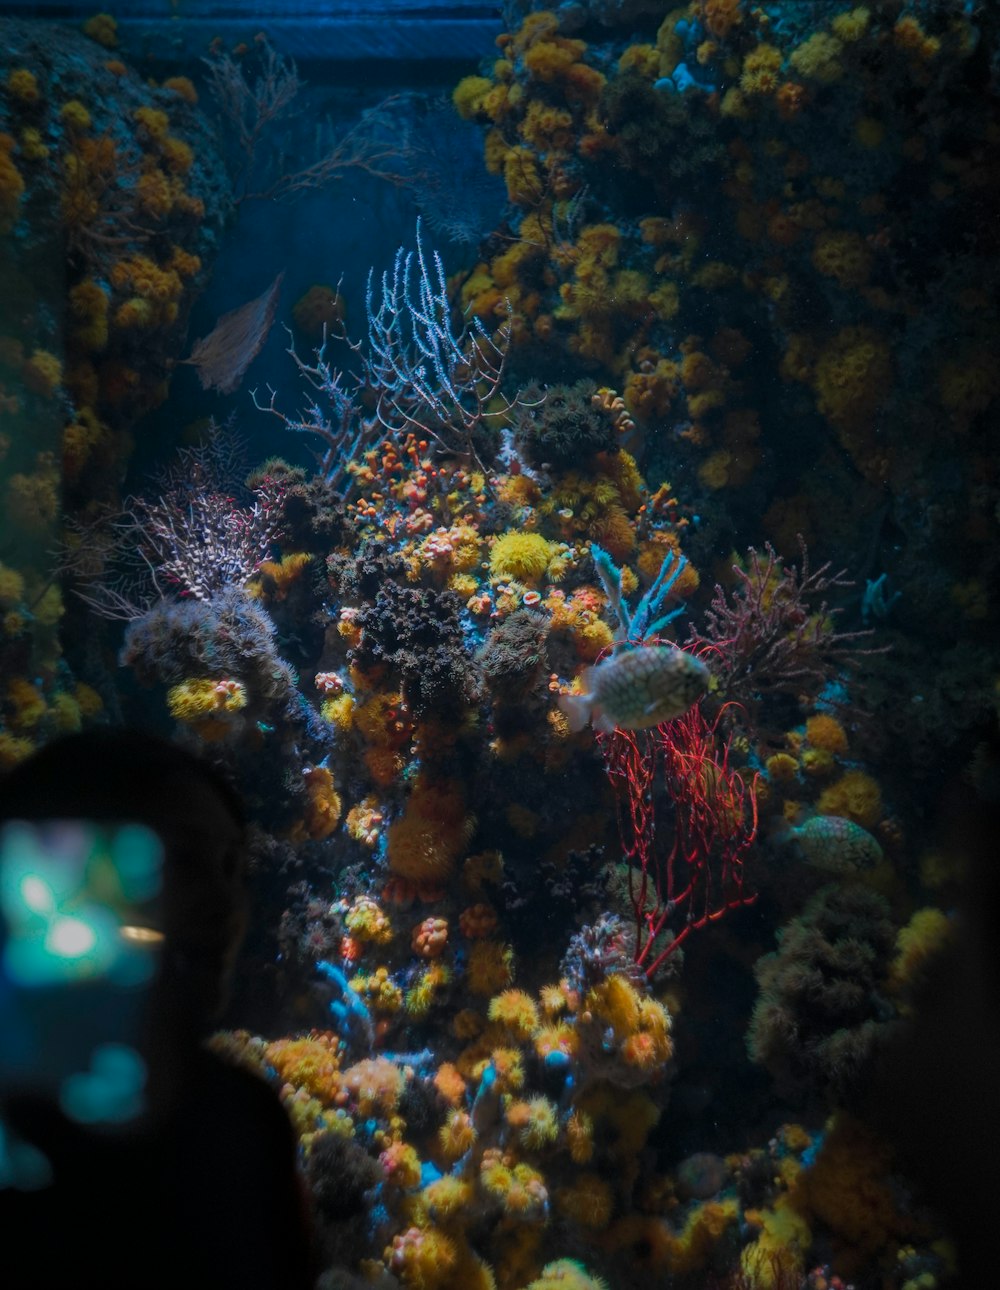 Un grand aquarium rempli de coraux colorés